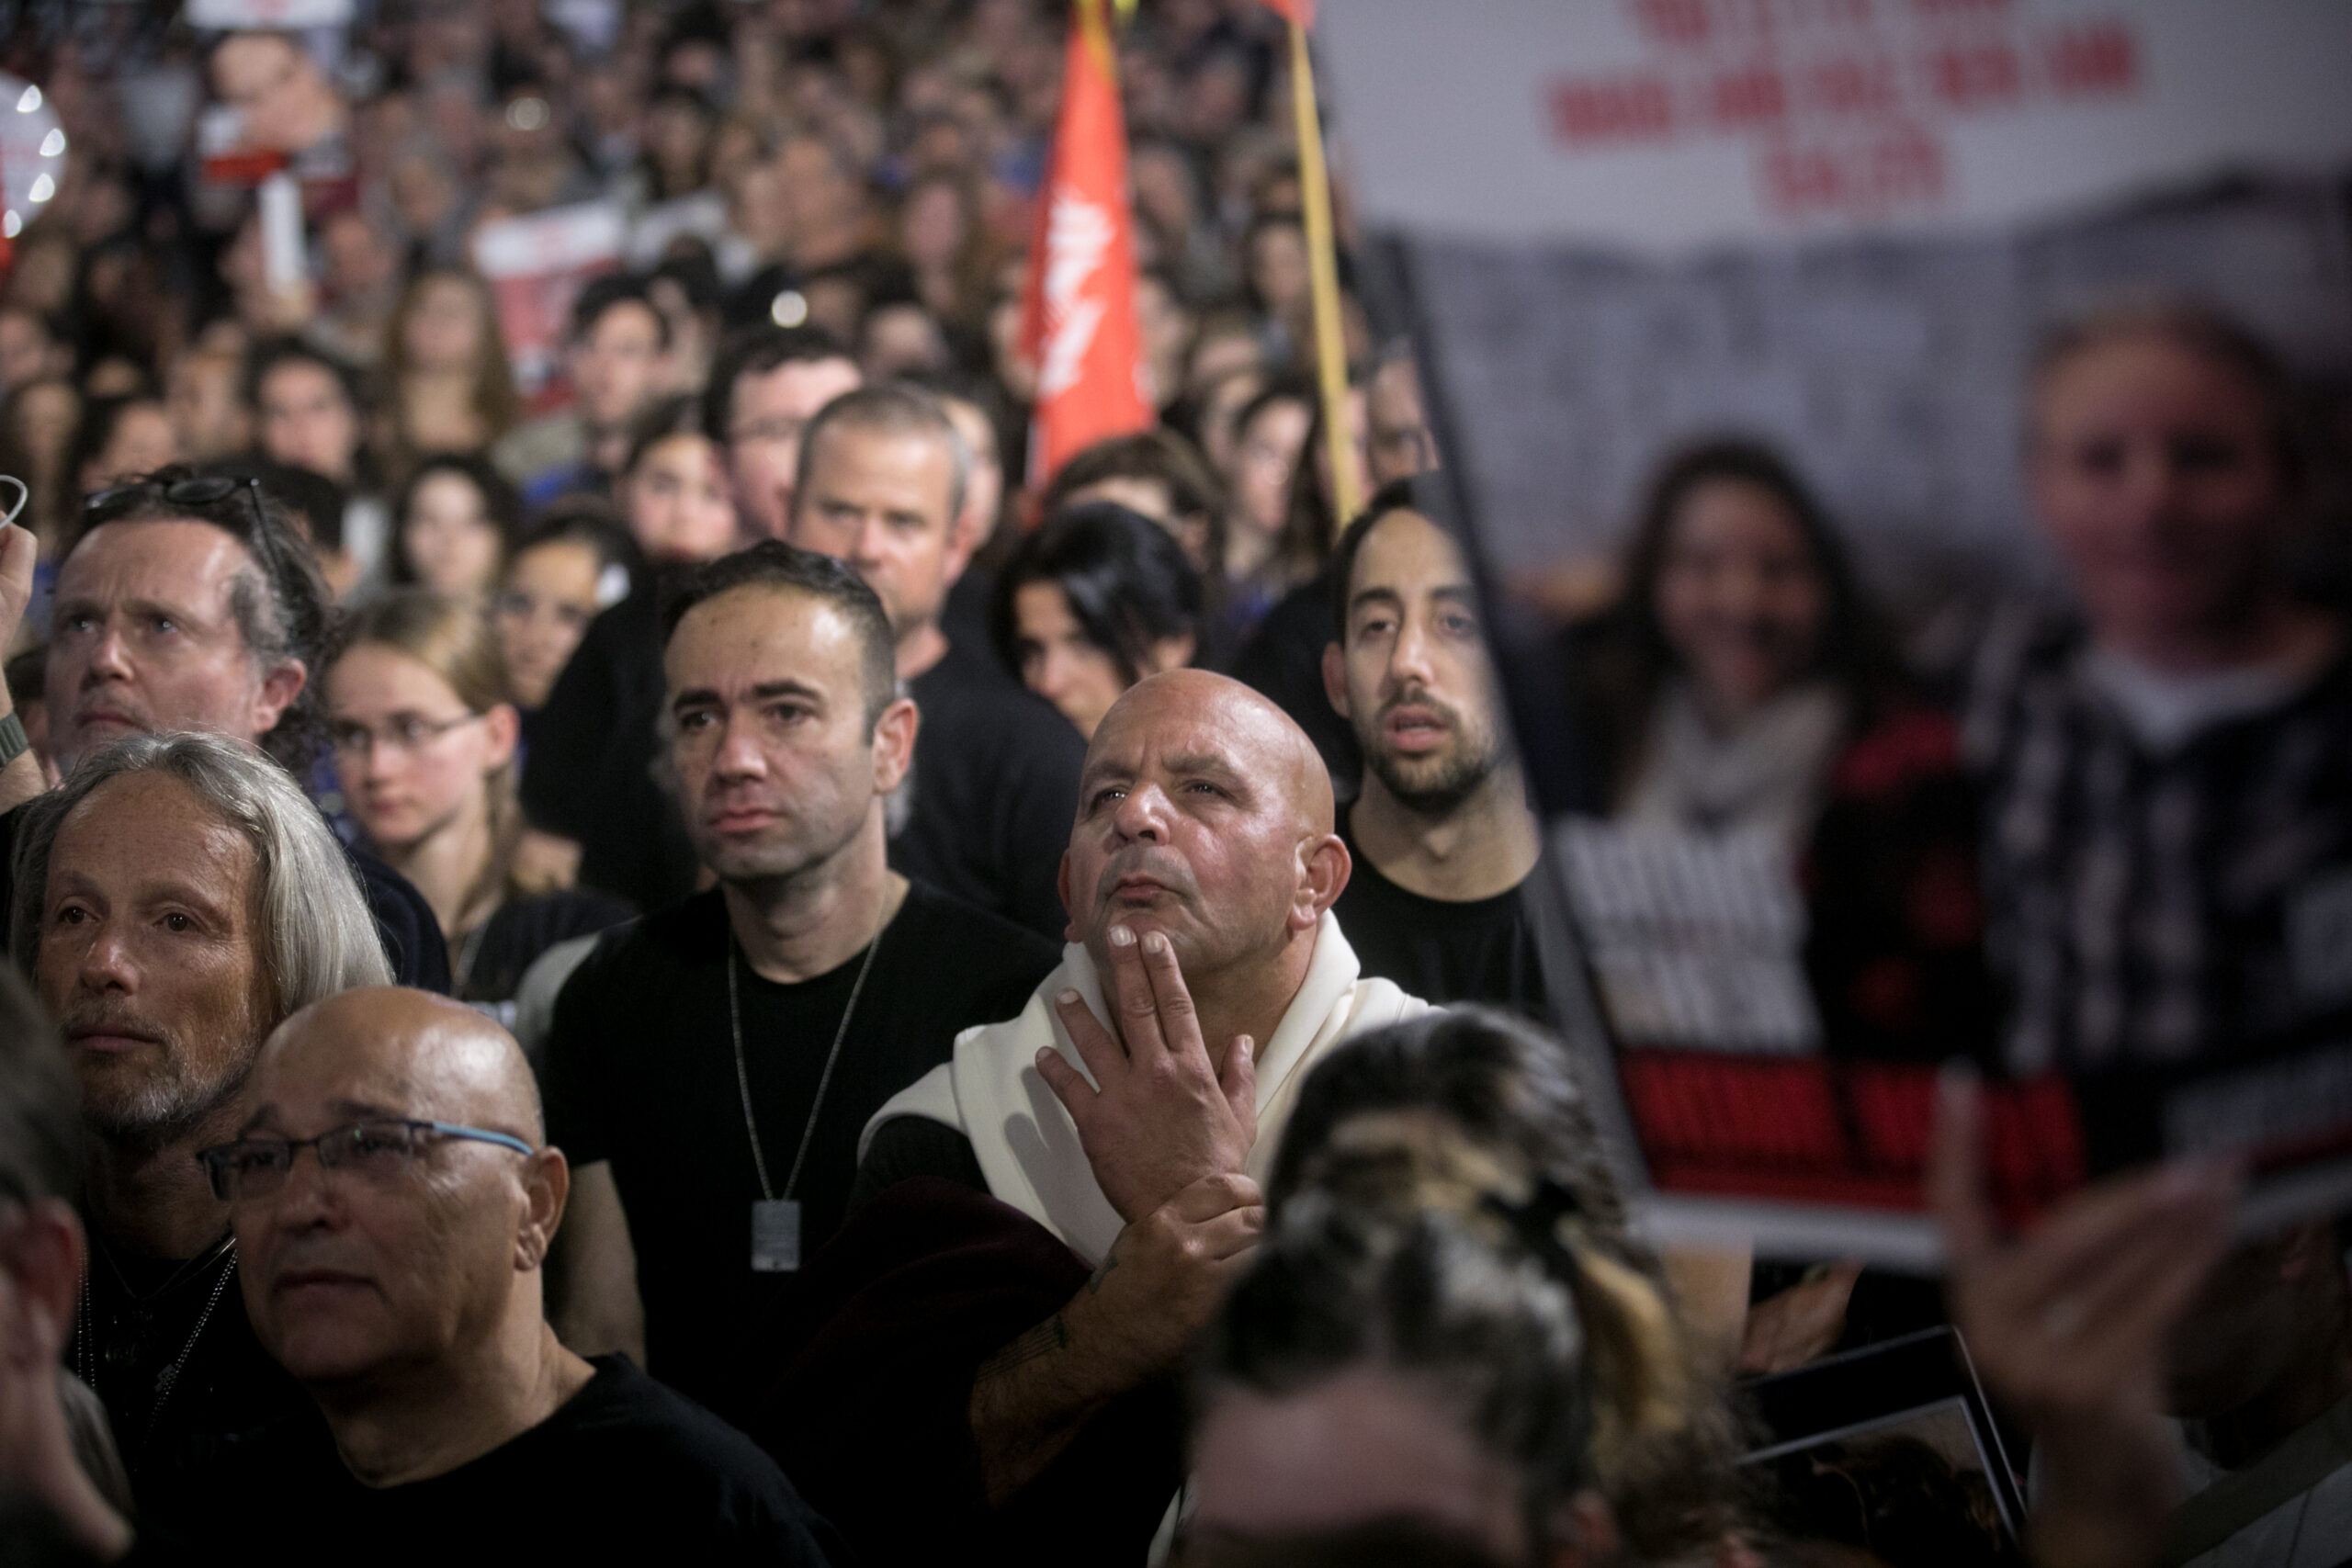 המחאה הציבורית עבדה. הפגנה בתל אביב למען שחרור בני הערובה, 18 בנובמבר (צילום: מרים אלסטר / פלאש 90)